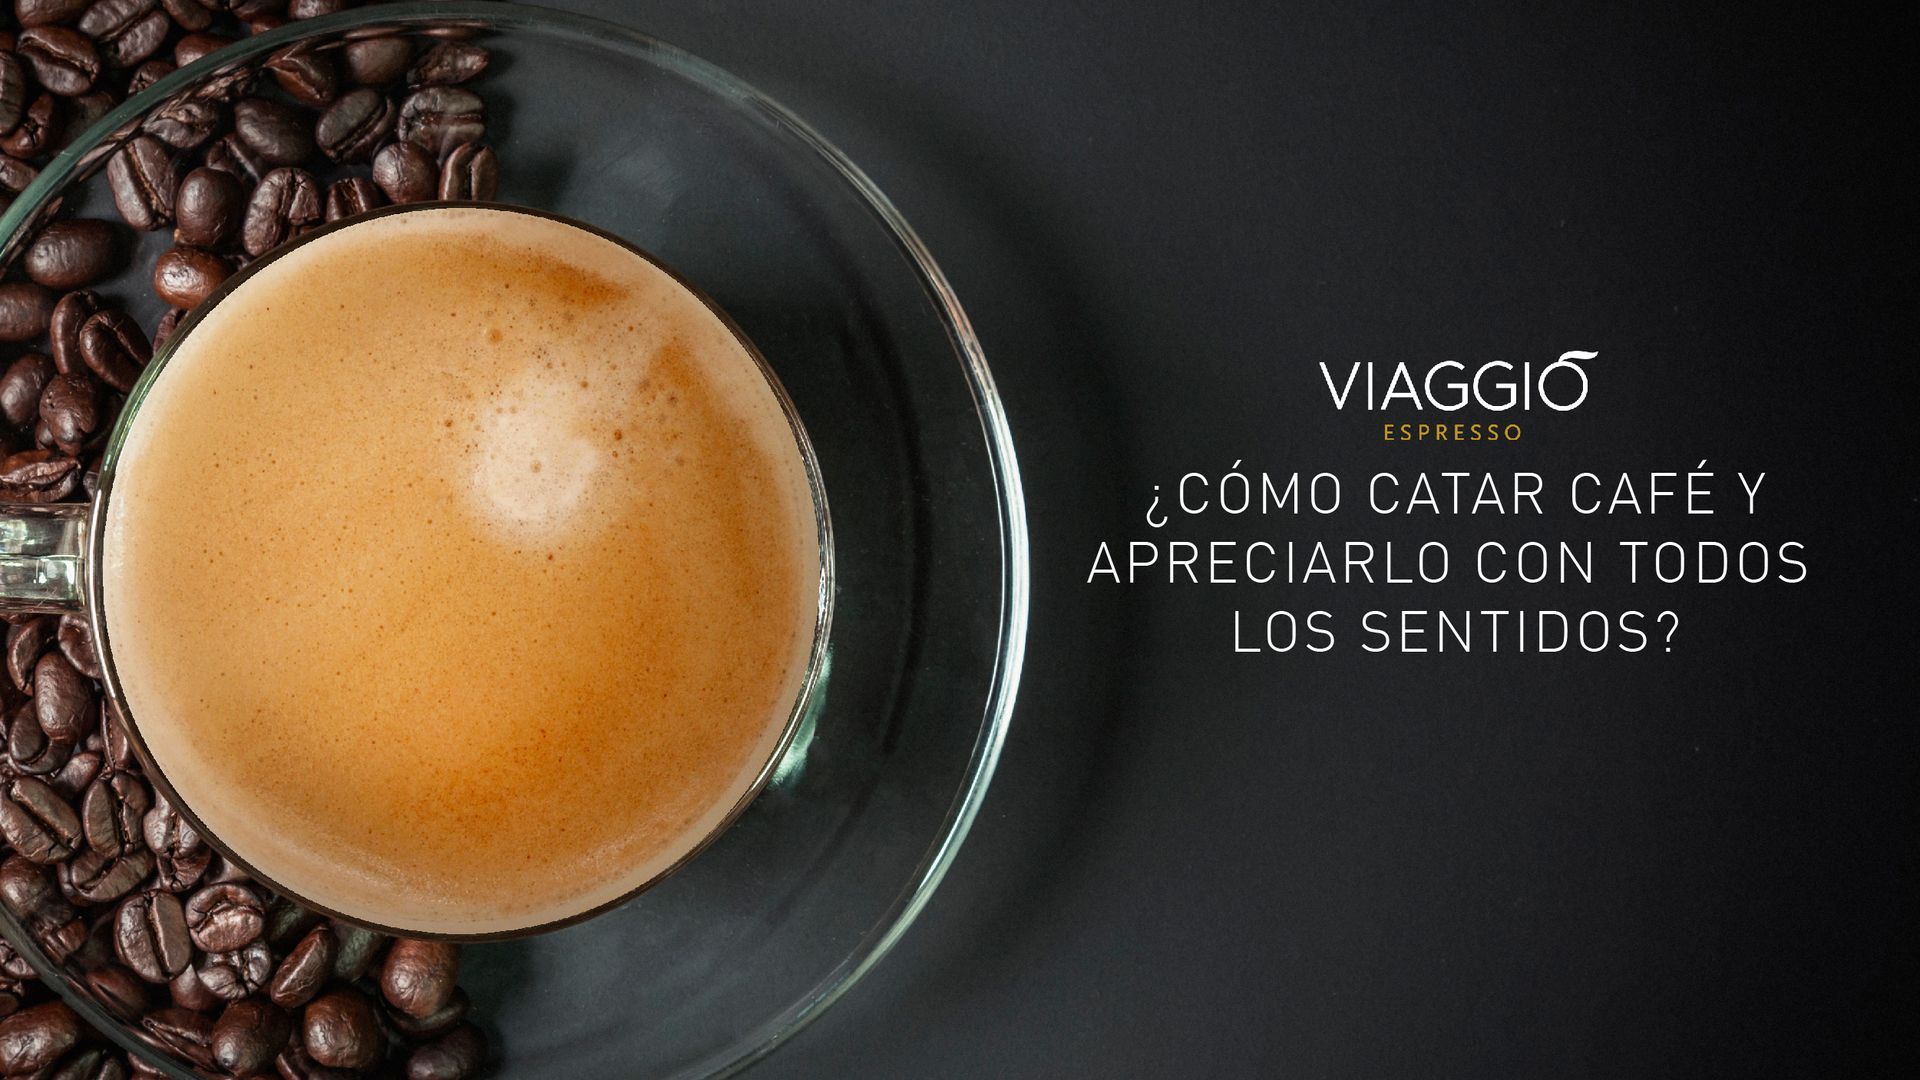 Espresso Barista Gran Crema - Café en Grano